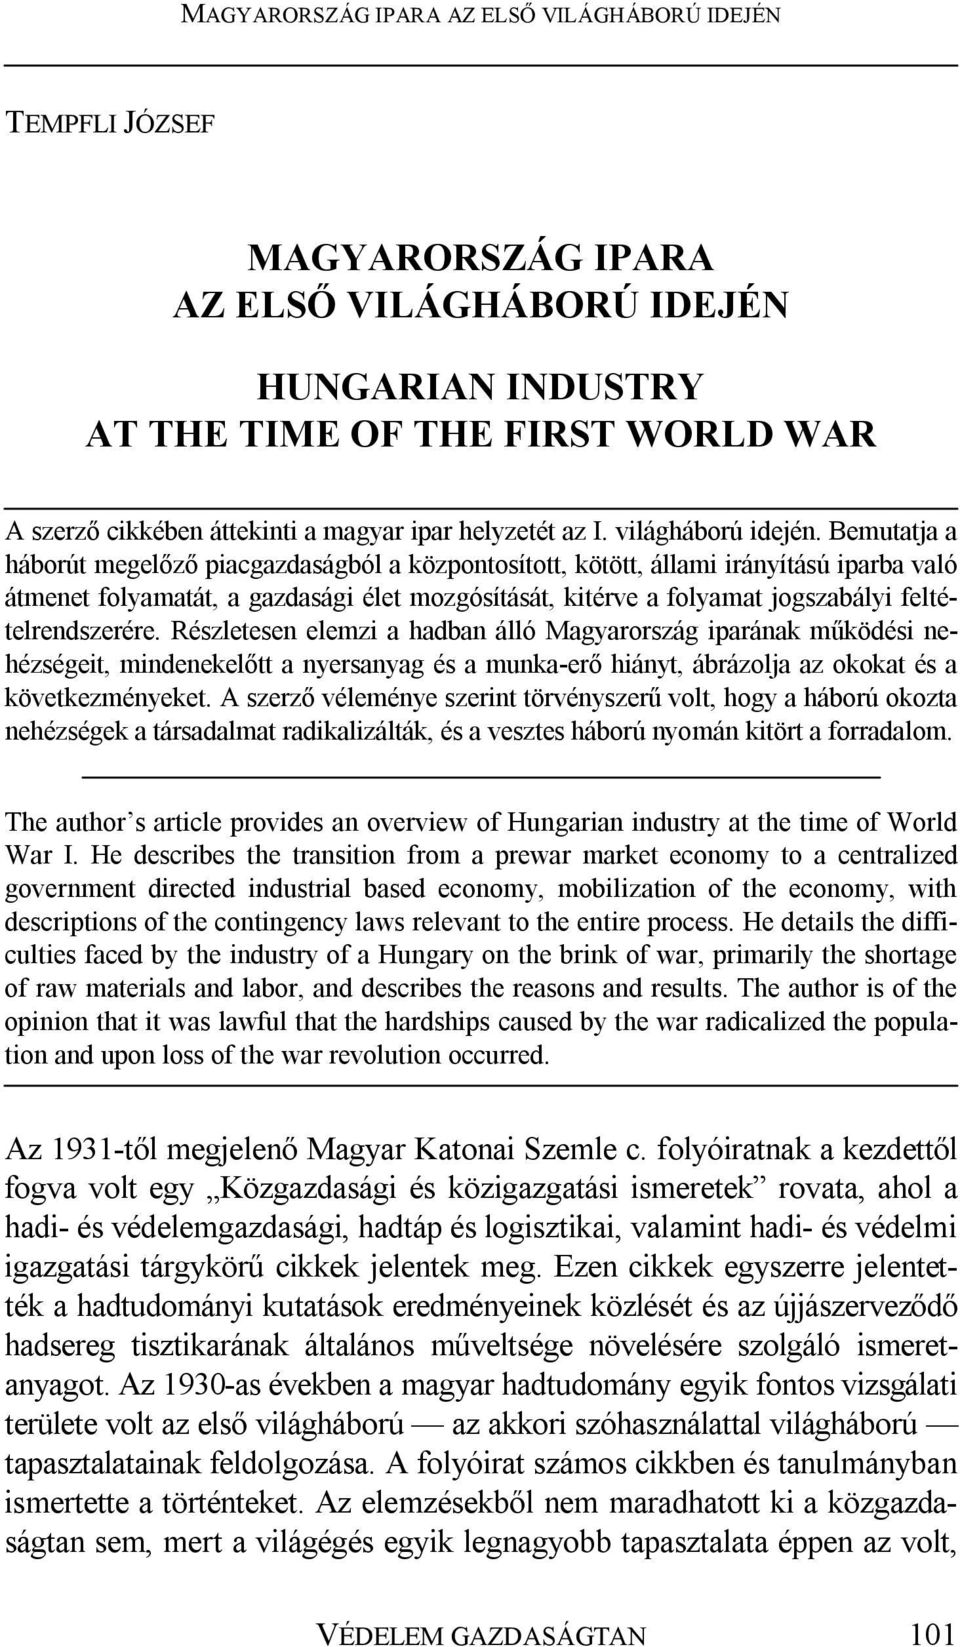 feltételrendszerére. Részletesen elemzi a hadban álló Magyarország iparának működési nehézségeit, mindenekelőtt a nyersanyag és a munka-erő hiányt, ábrázolja az okokat és a következményeket.